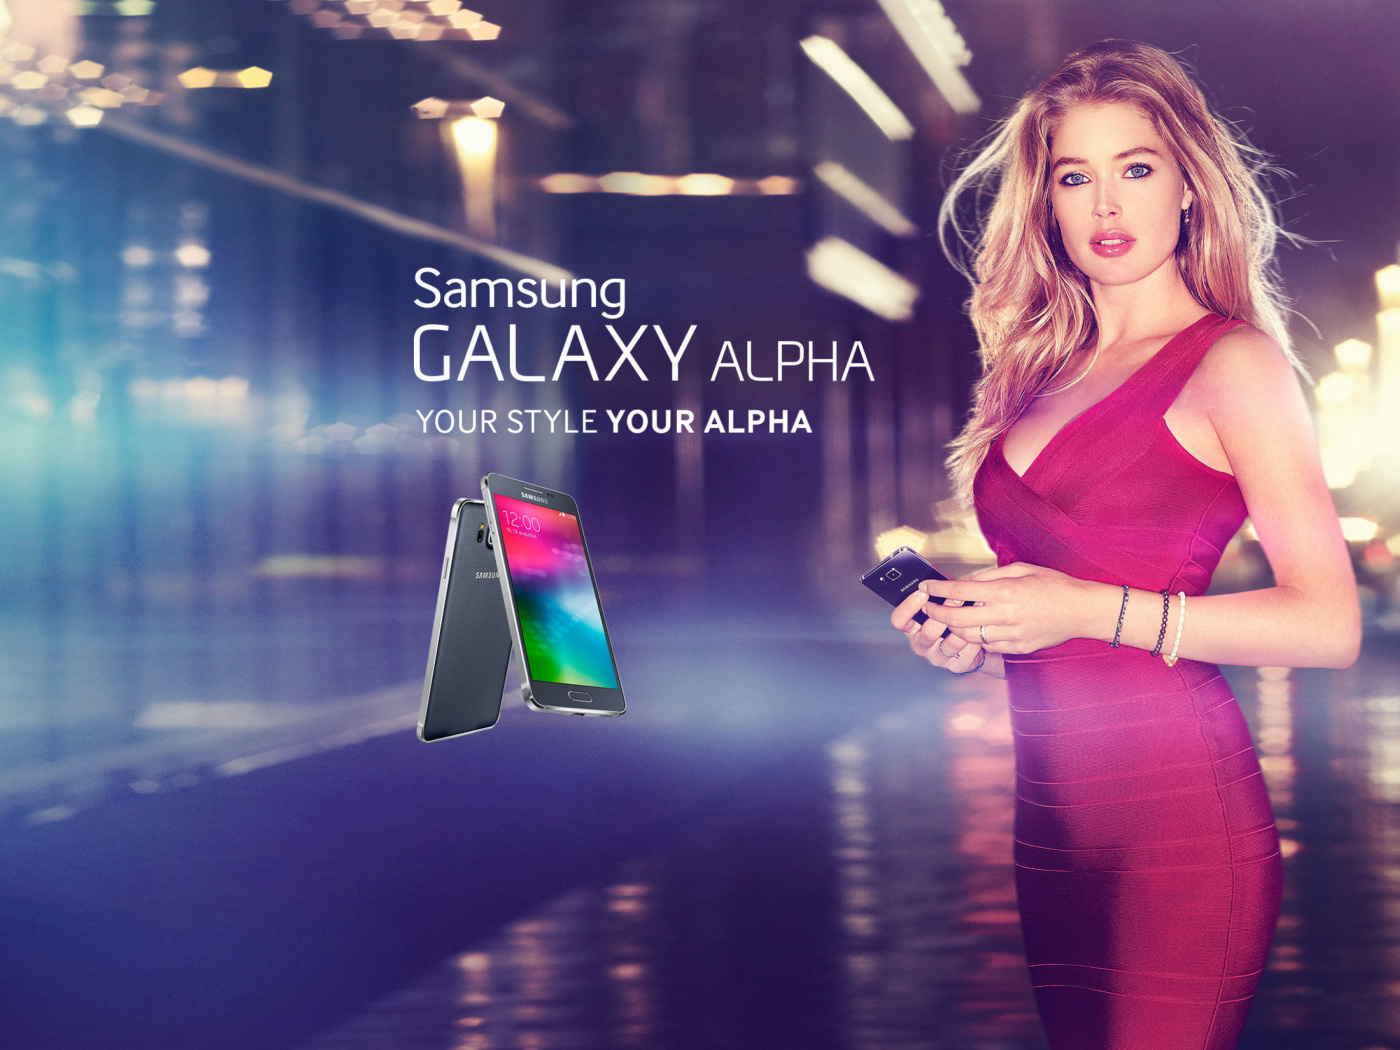 Das Samsung Galaxy Alpha Advertisement with Doutzen Kroes Wallpaper 1400x1050